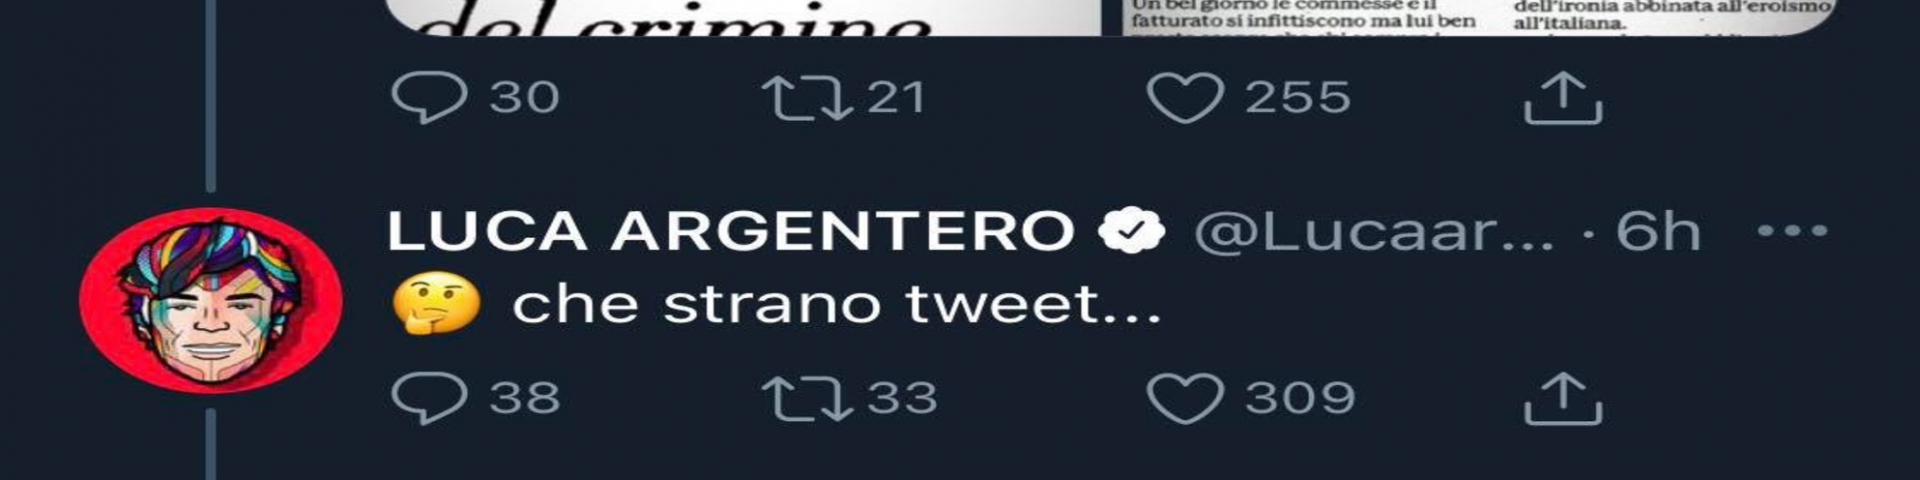 Beppe Fiorello e Luca Argentero: scontro su Twitter, ecco cos’è successo